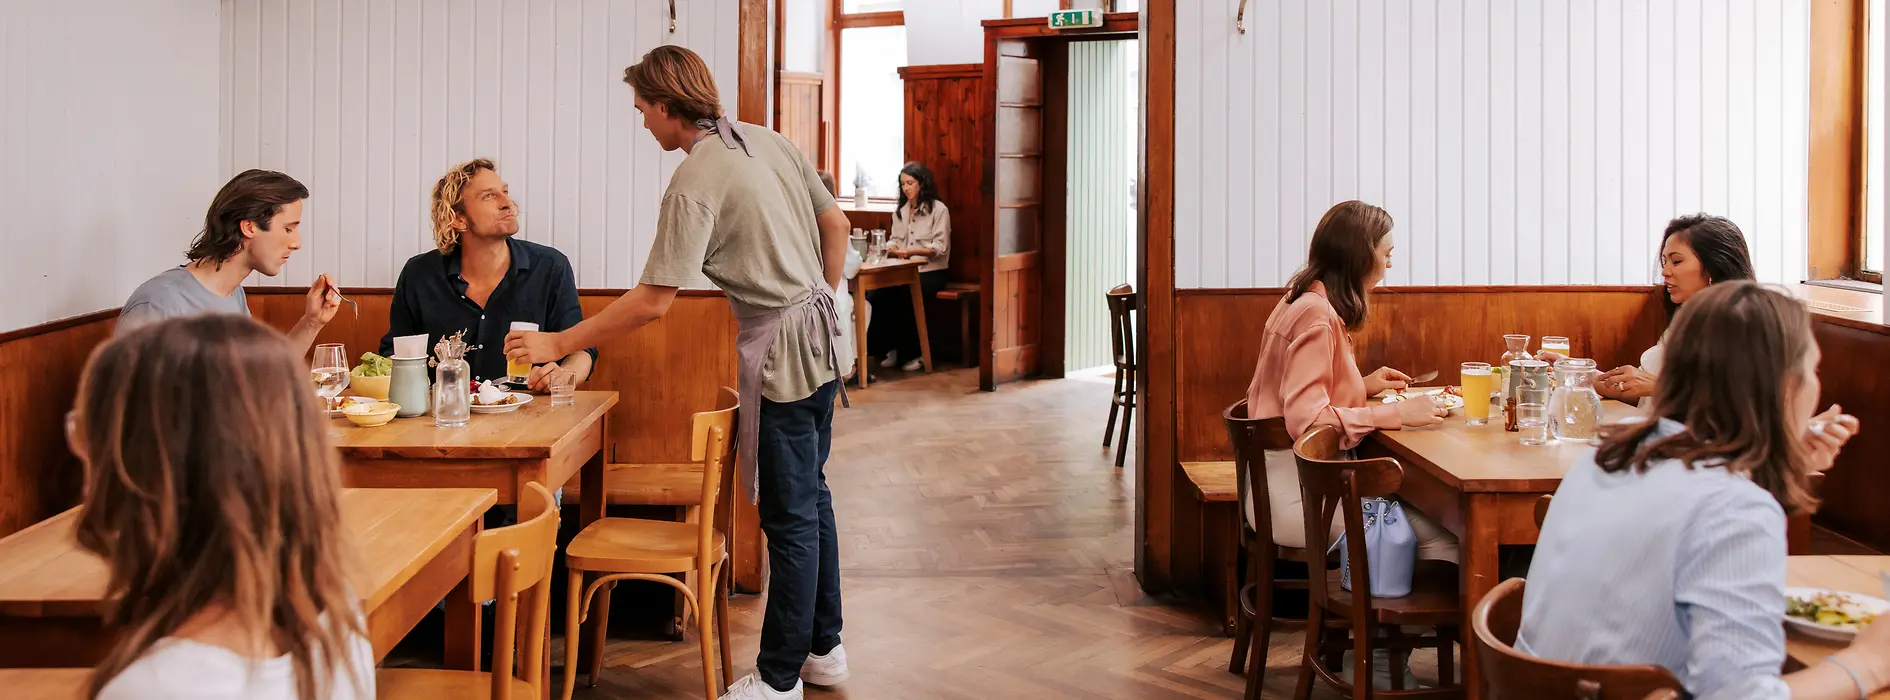 Stuwerviertel, restaurace Brösl, pohled do interiéru, hosté